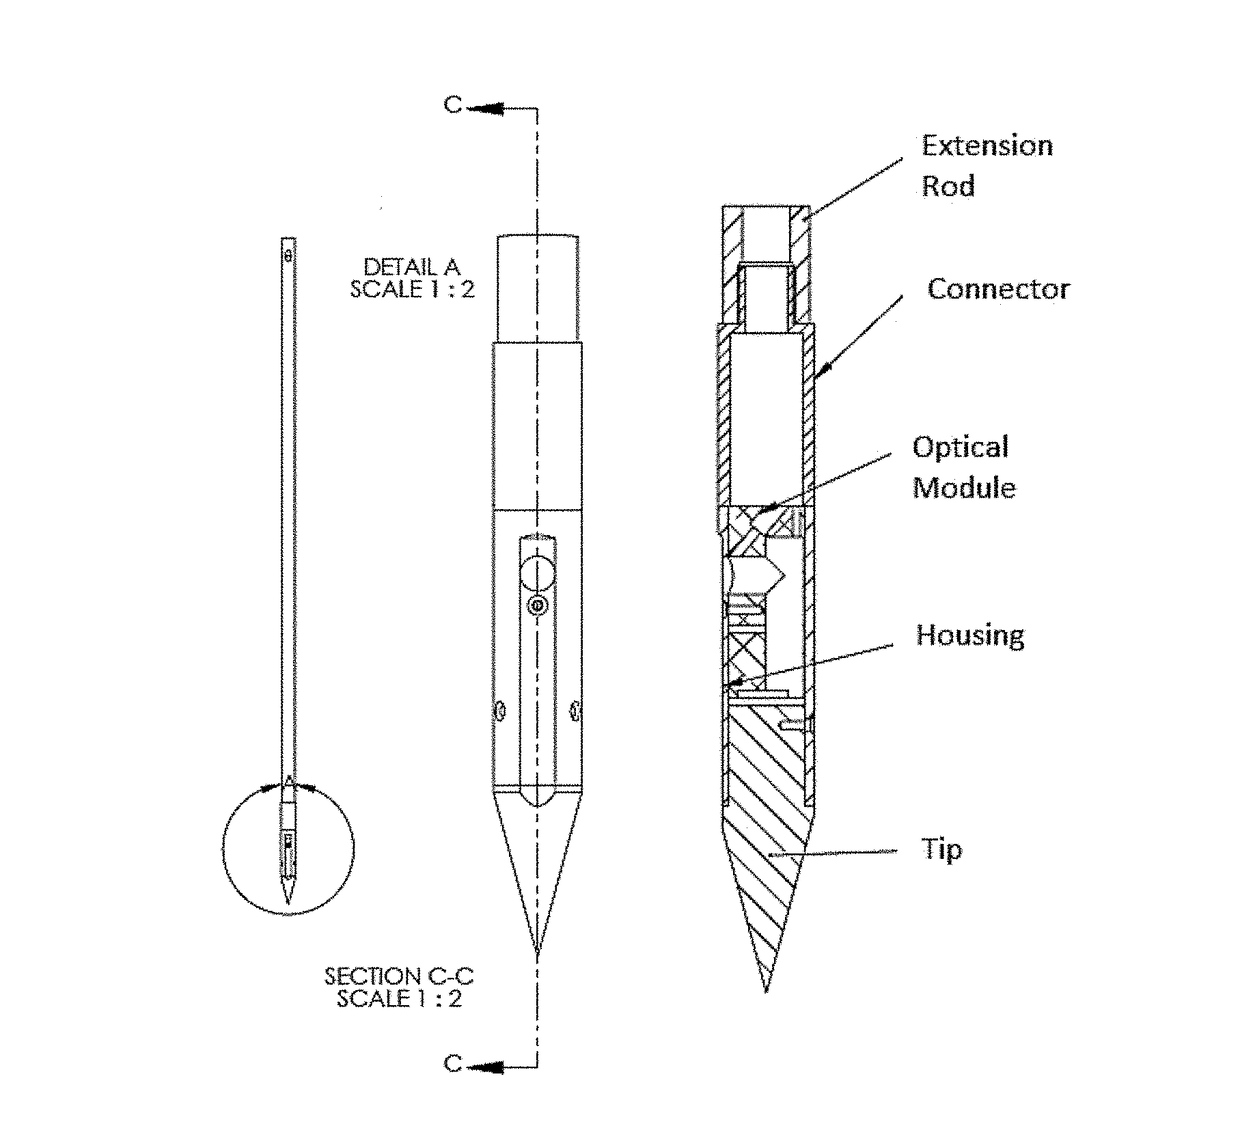 Vis-nir equipped soil penetrometer